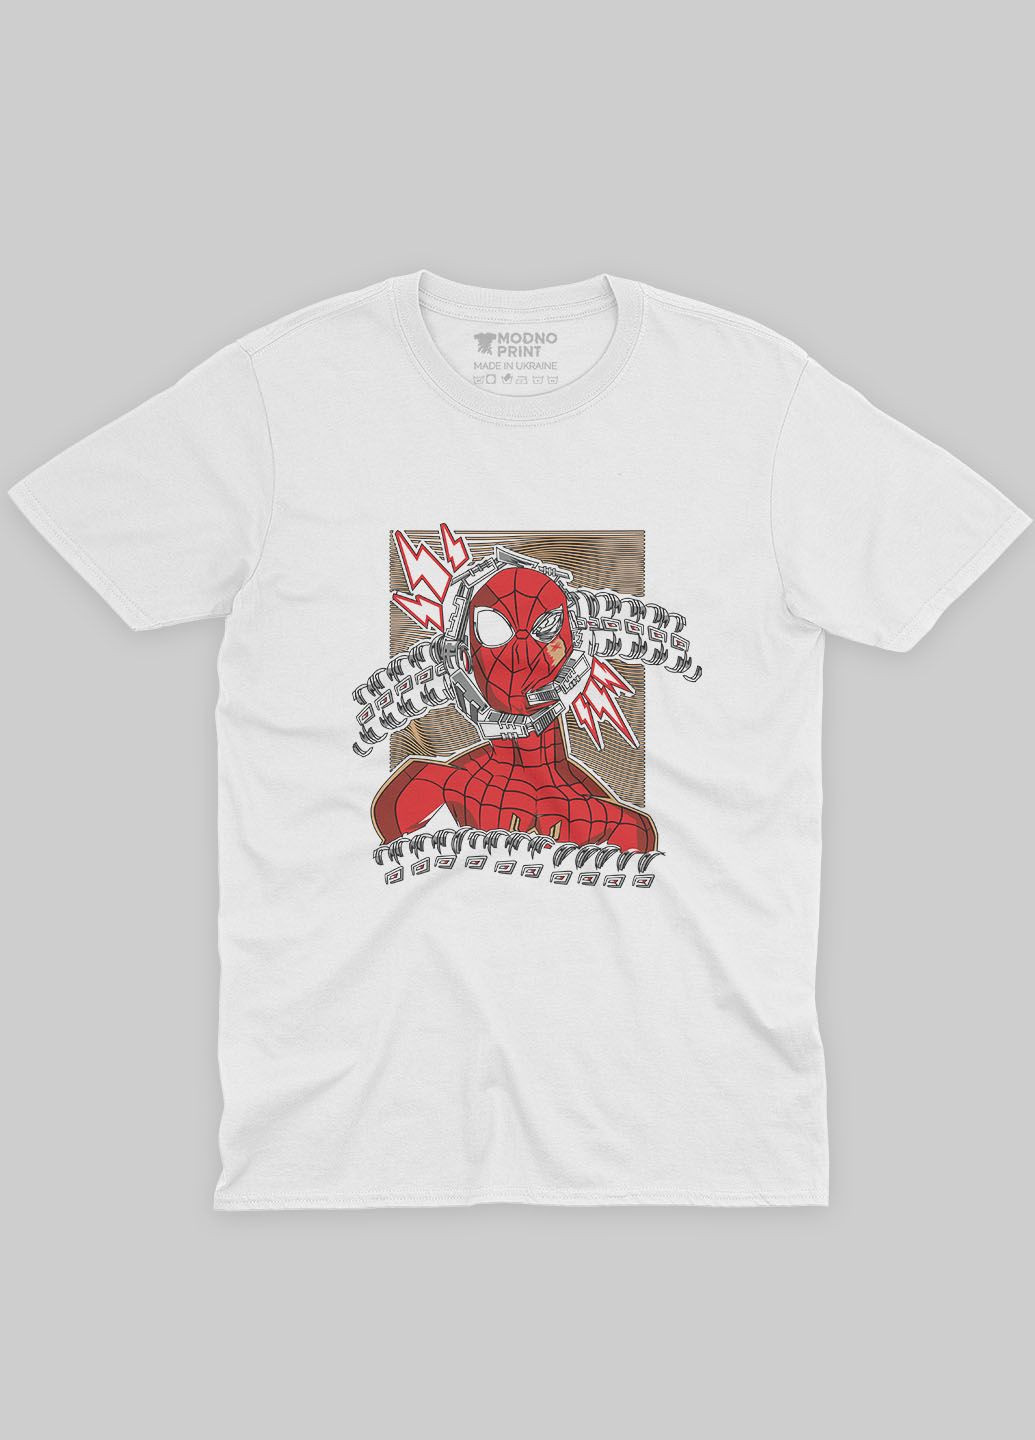 Белая демисезонная футболка для мальчика с принтом супергероя - человек-паук (ts001-1-whi-006-014-013-b) Modno